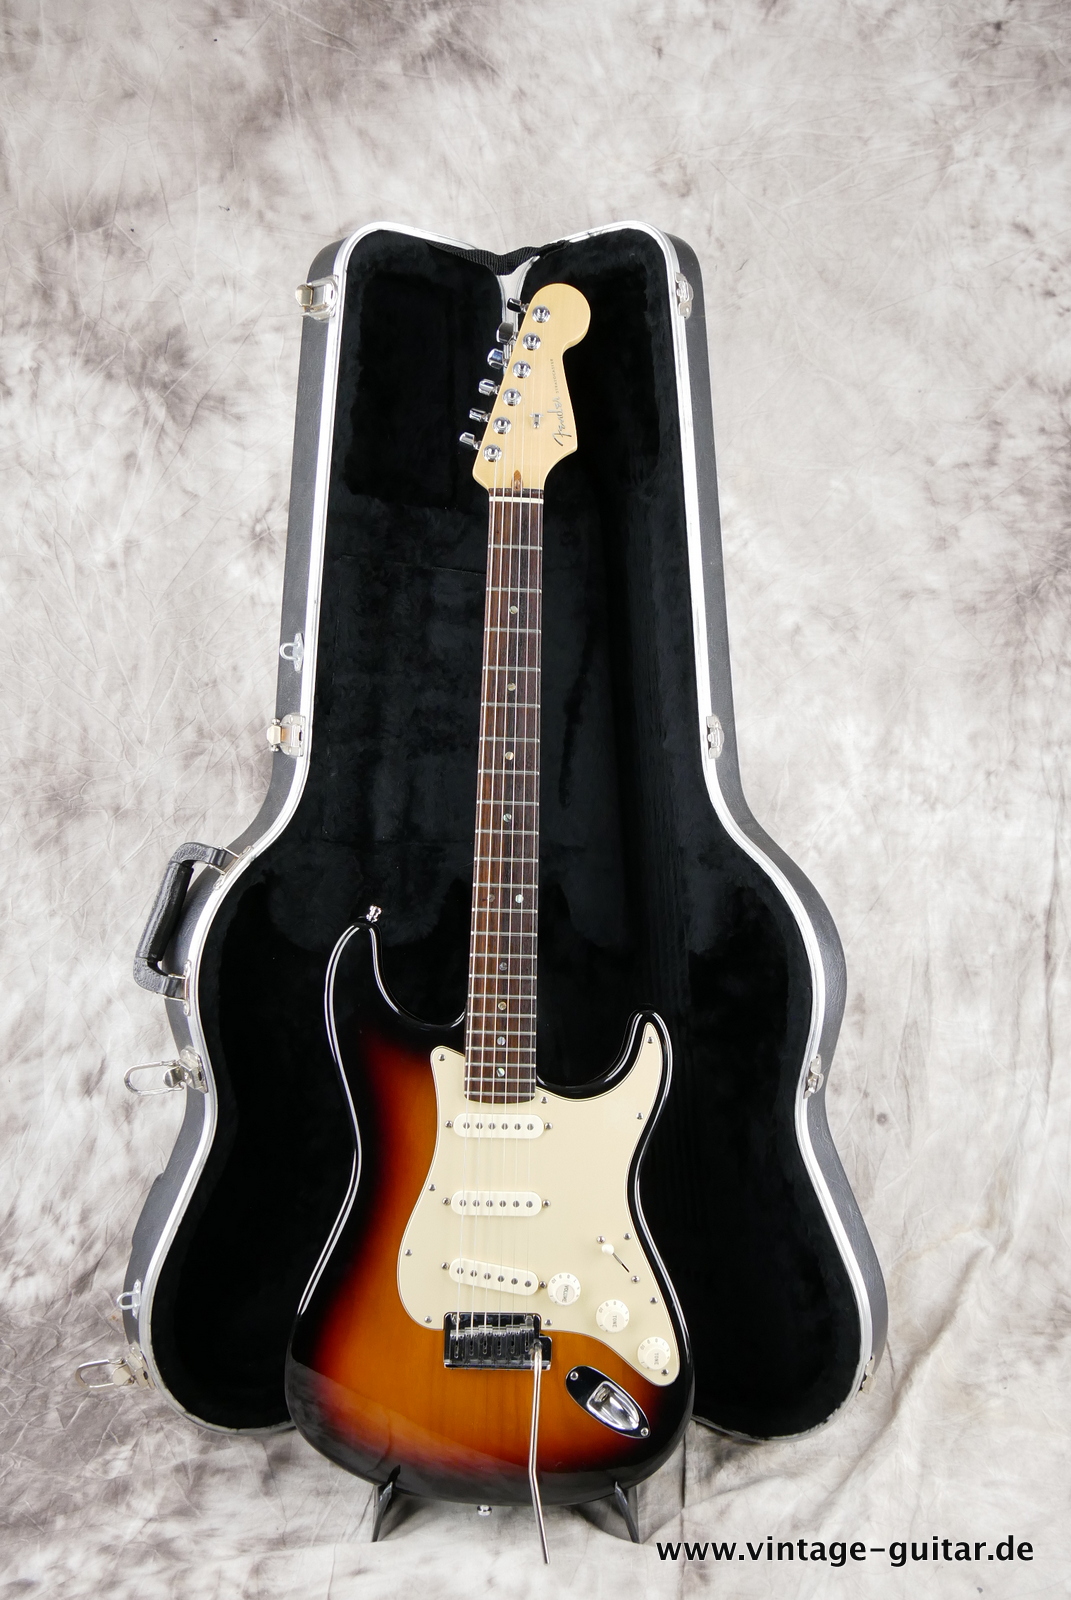 Fender_Startocaster_American_Deluxe_sunburst_samarium-cobalt-noiseless_tremolo_2005-013.JPG